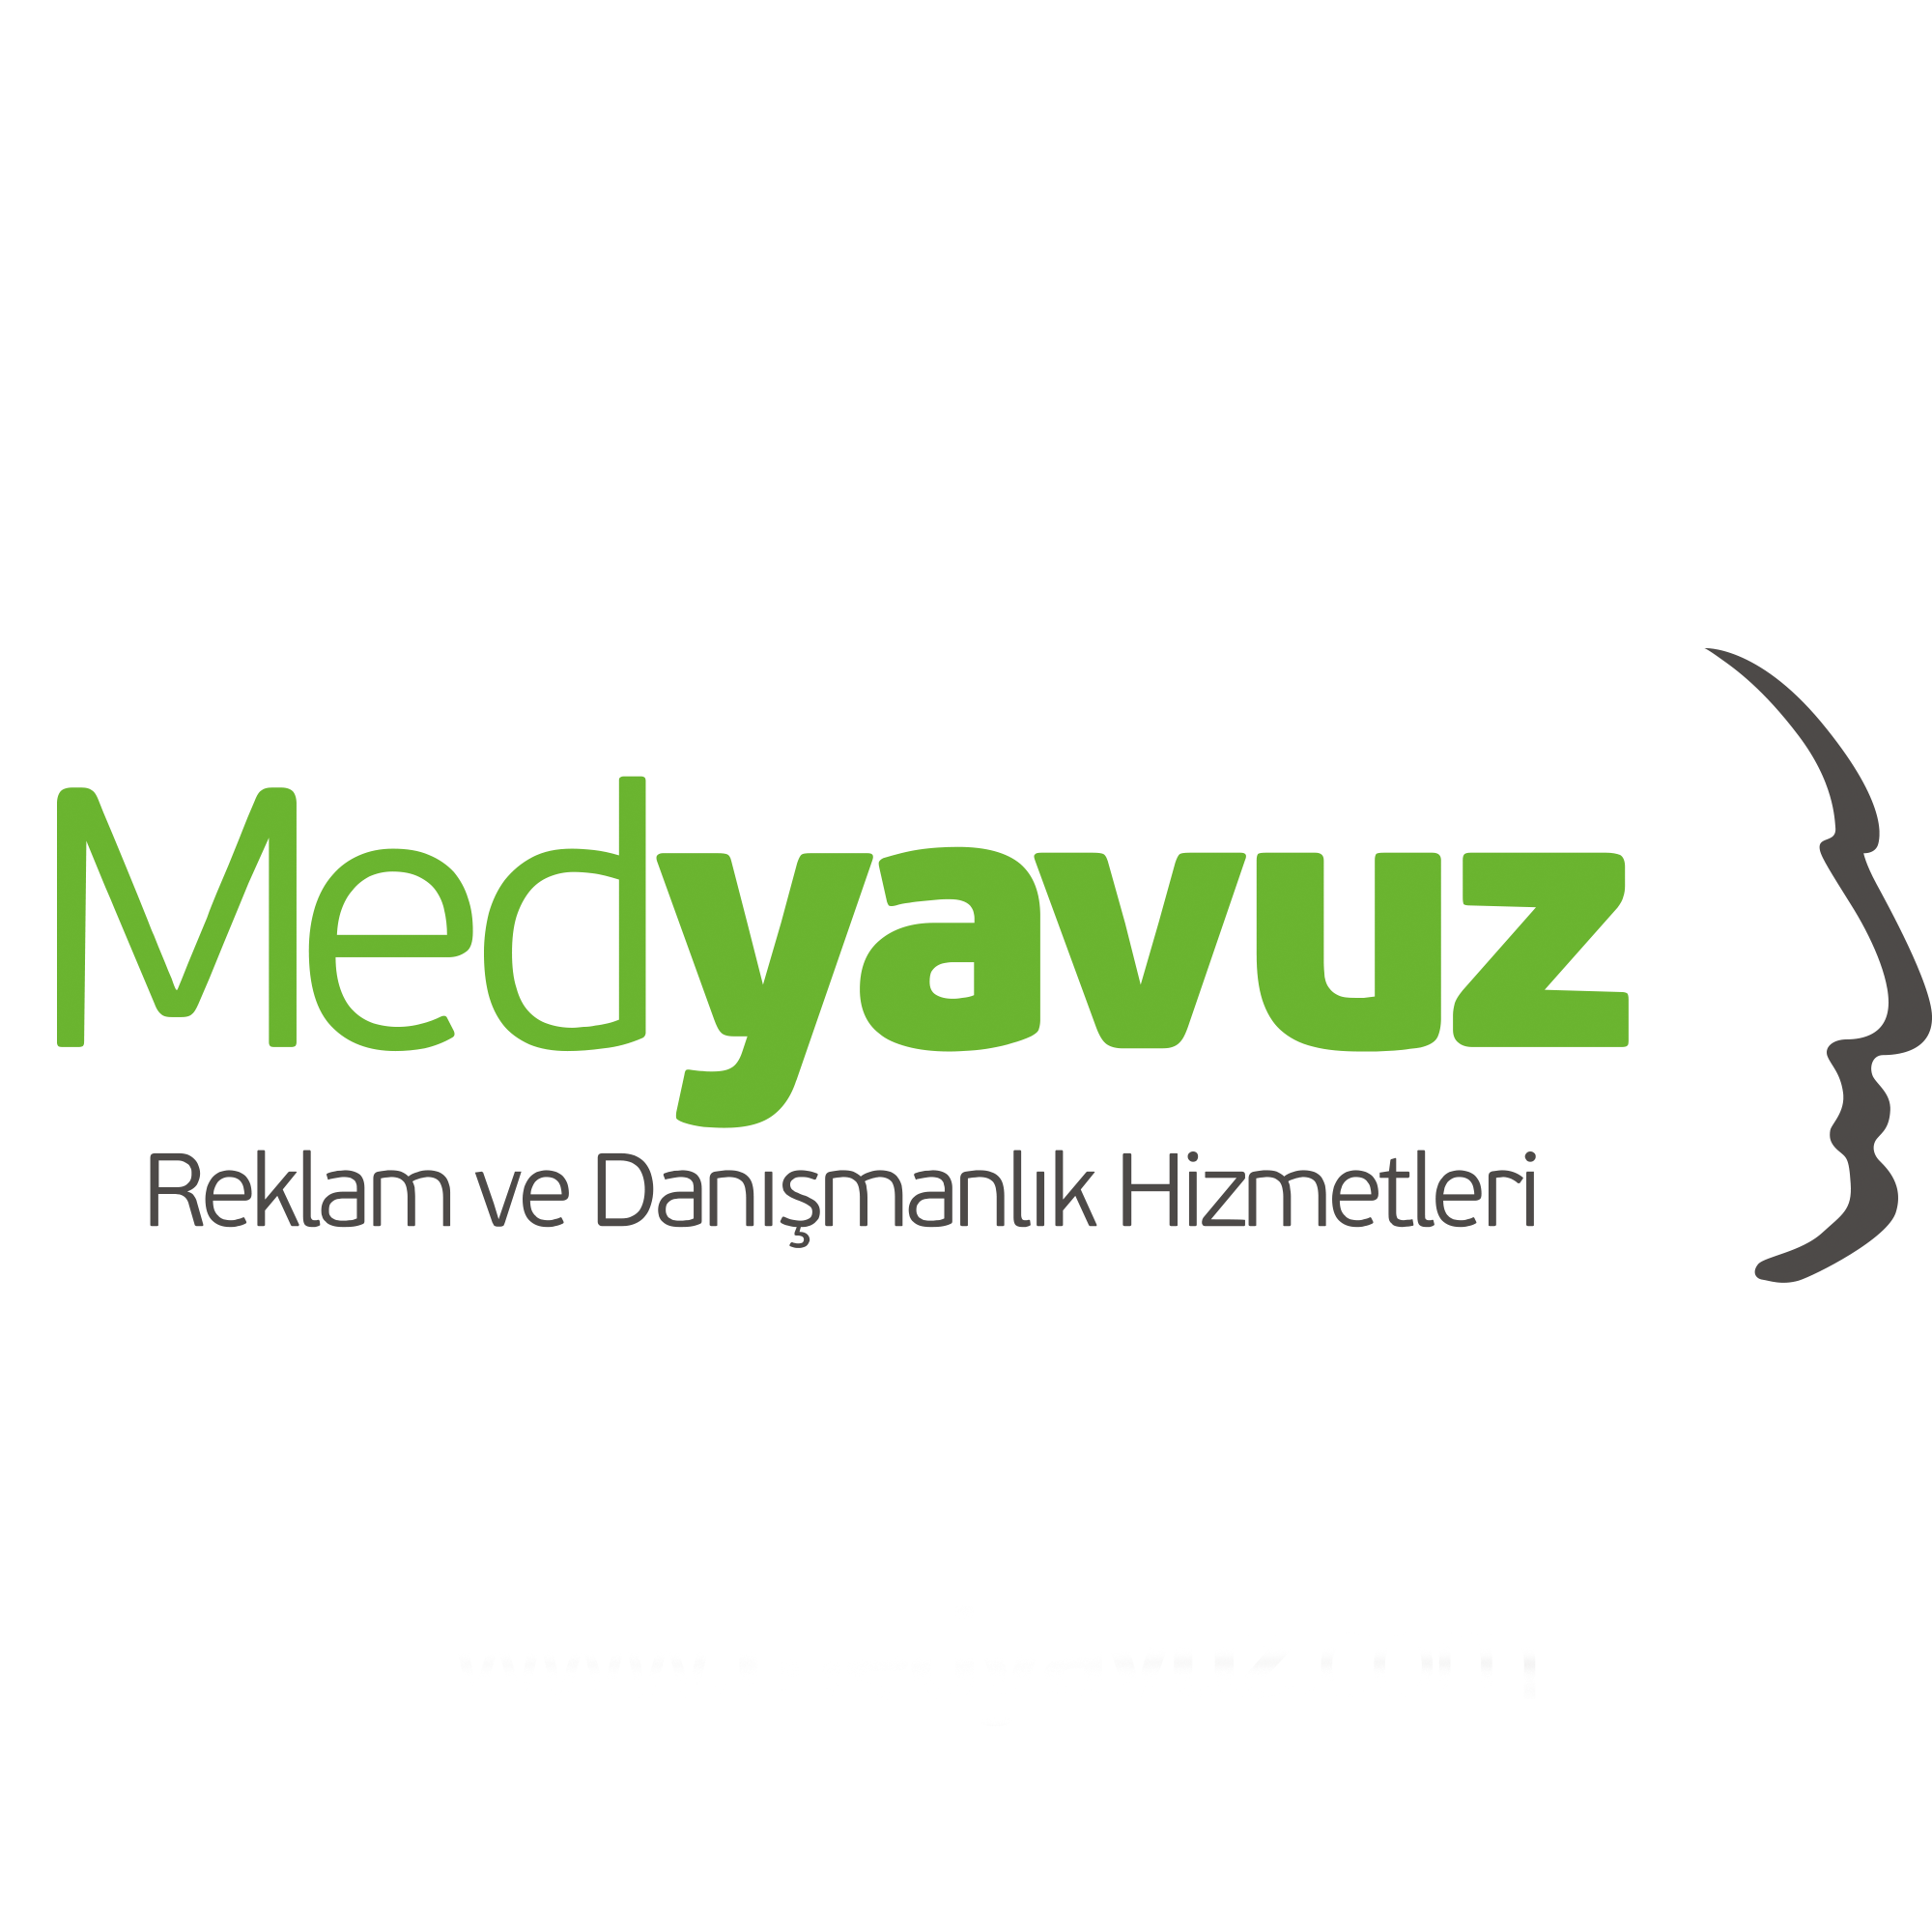 Mediavuz Advertising & International Fair Organization